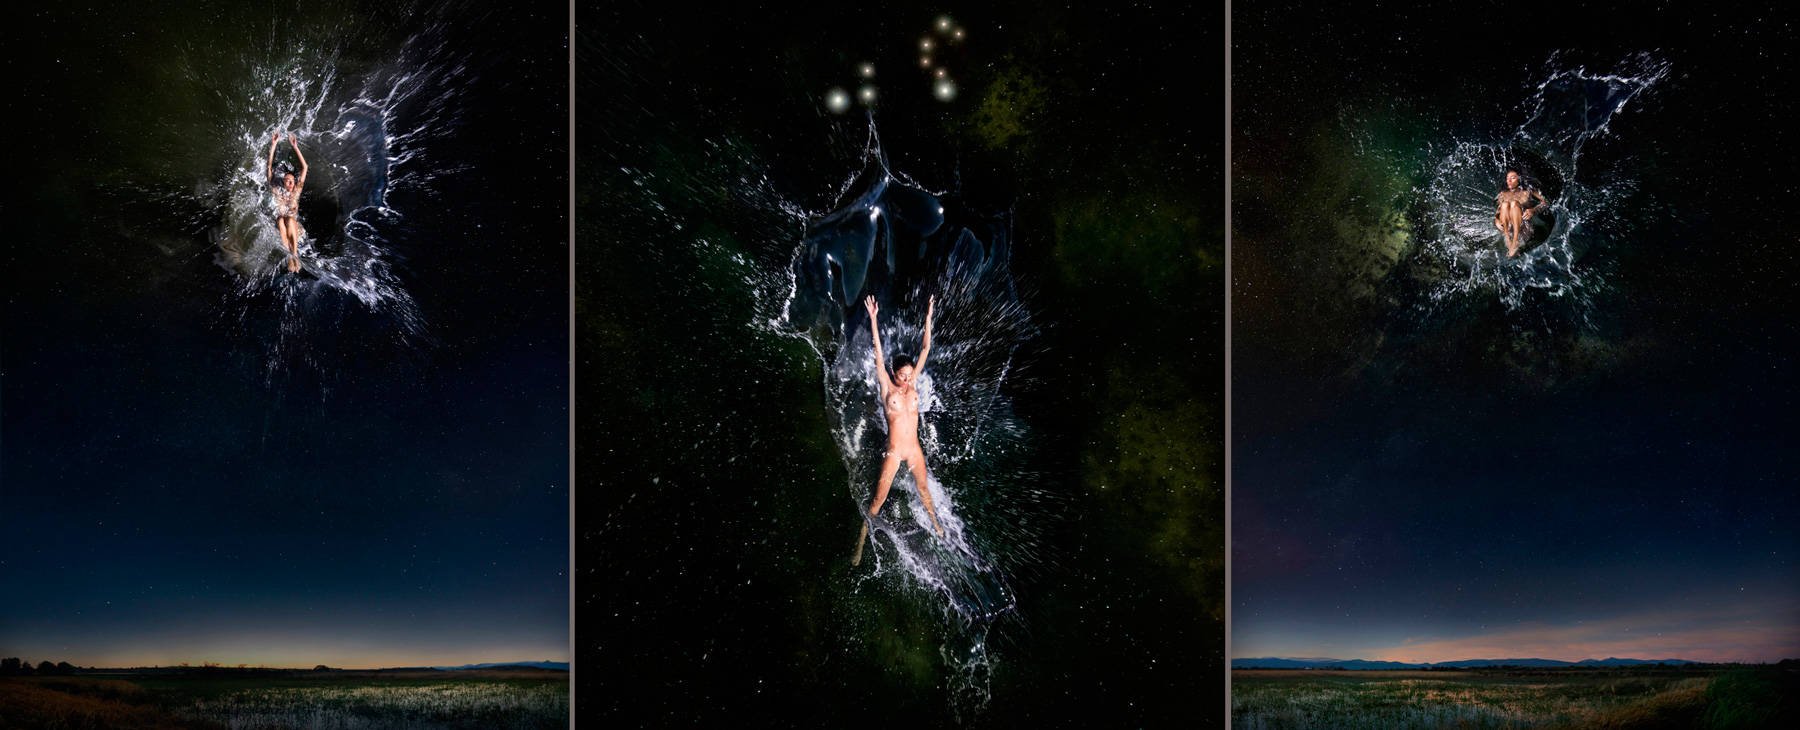 EUFONÍA de la Constelación de LEO. Fotografía digital nocturna y acuática. Configuración y retoque digitales